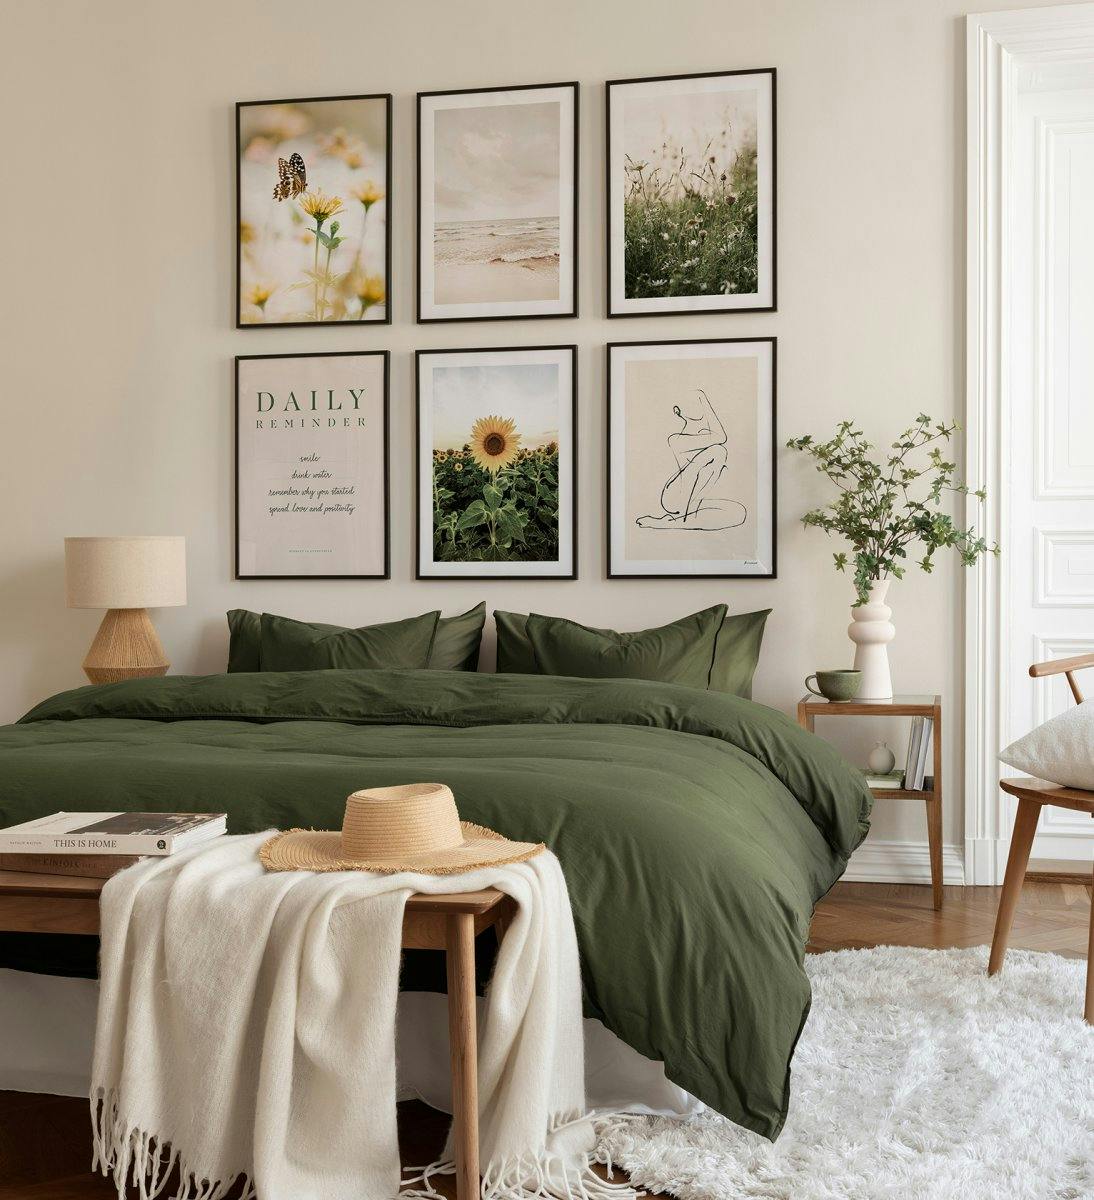 Snygg tavelvägg med naturmotiv i grönt som passar utmärkt i sovrummet med svarta träramar.